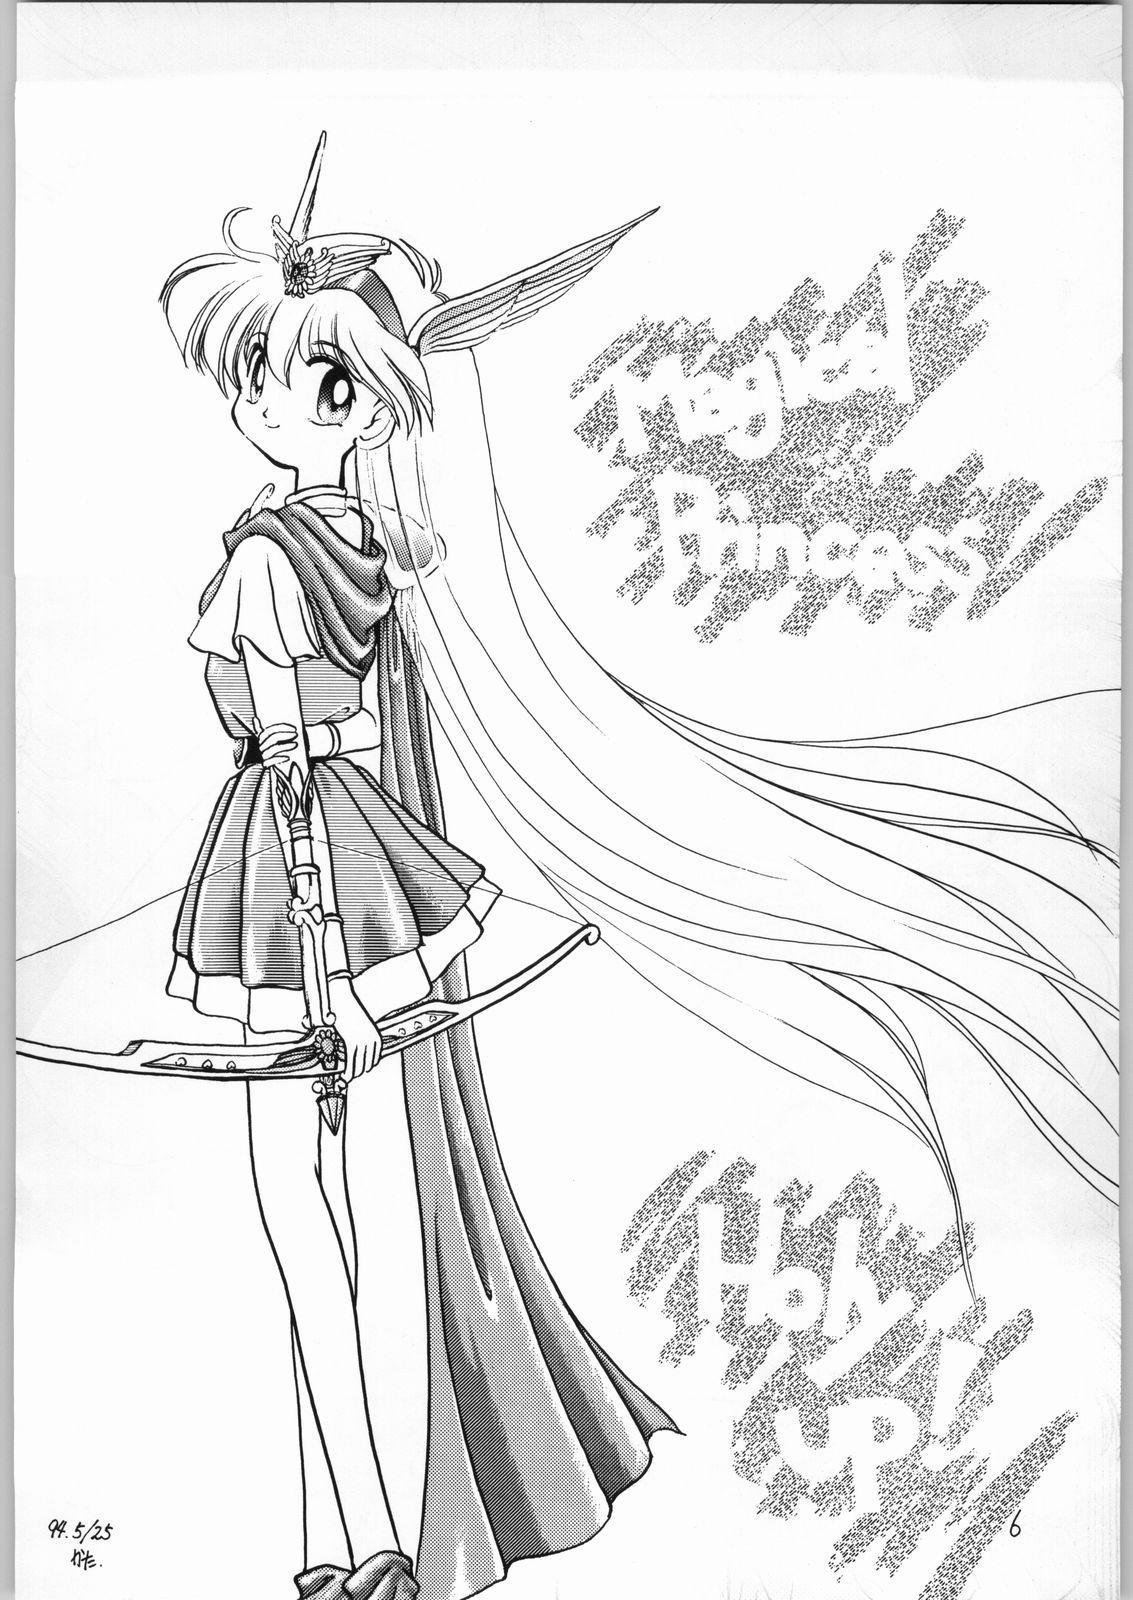 Eating Dance of Princess 3 - Sailor moon Tenchi muyo Akazukin cha cha Minky momo Ng knight lamune and 40 Tites - Page 5